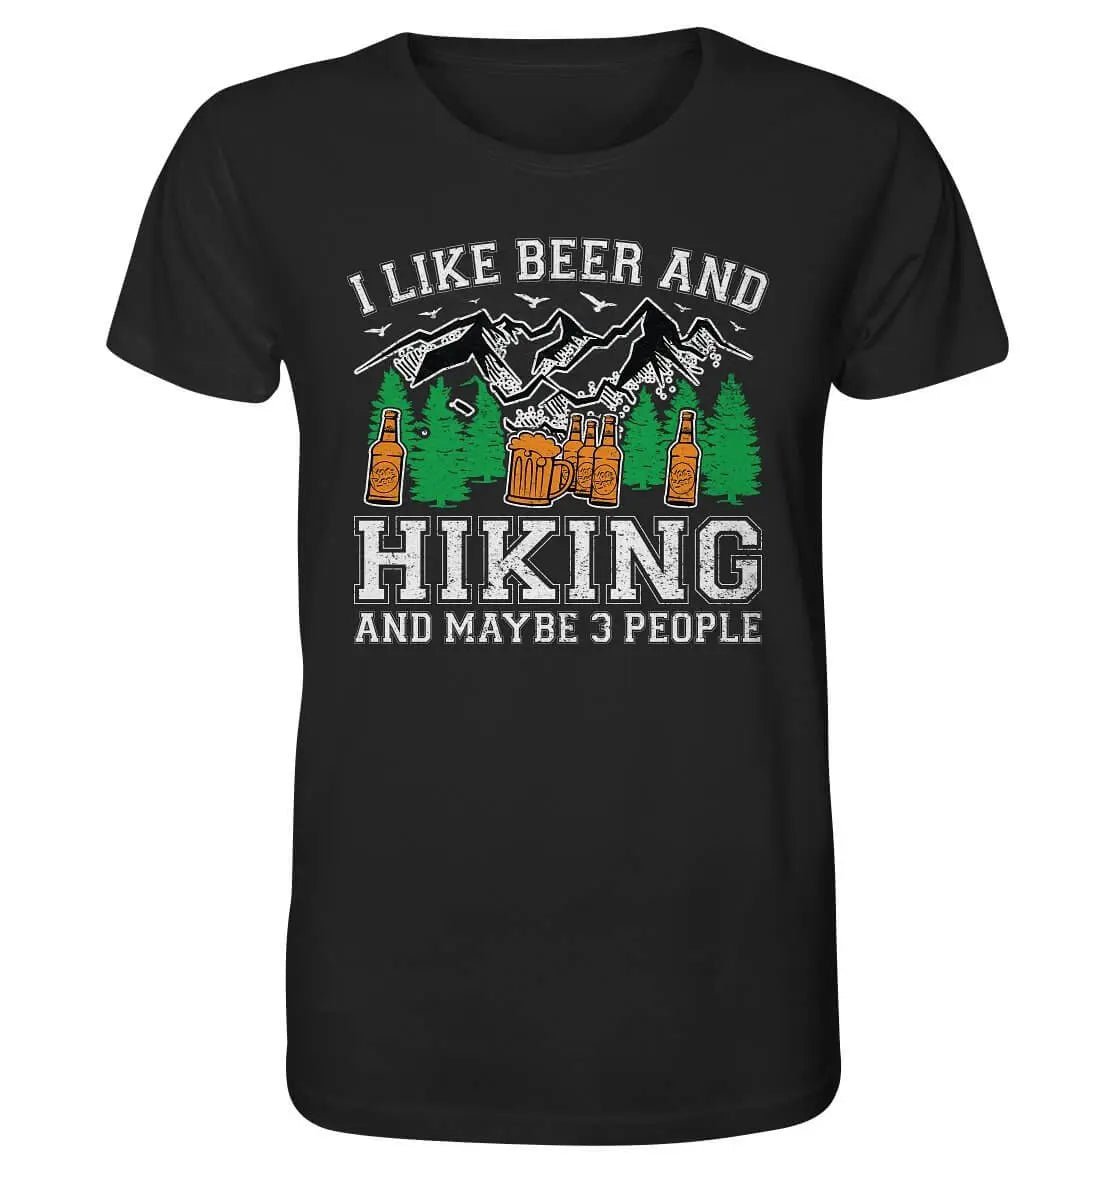 Ich mag Hoppymerch-Bier und Wandern und vielleicht 3 Leute Hoppymerch-T-Shirt.